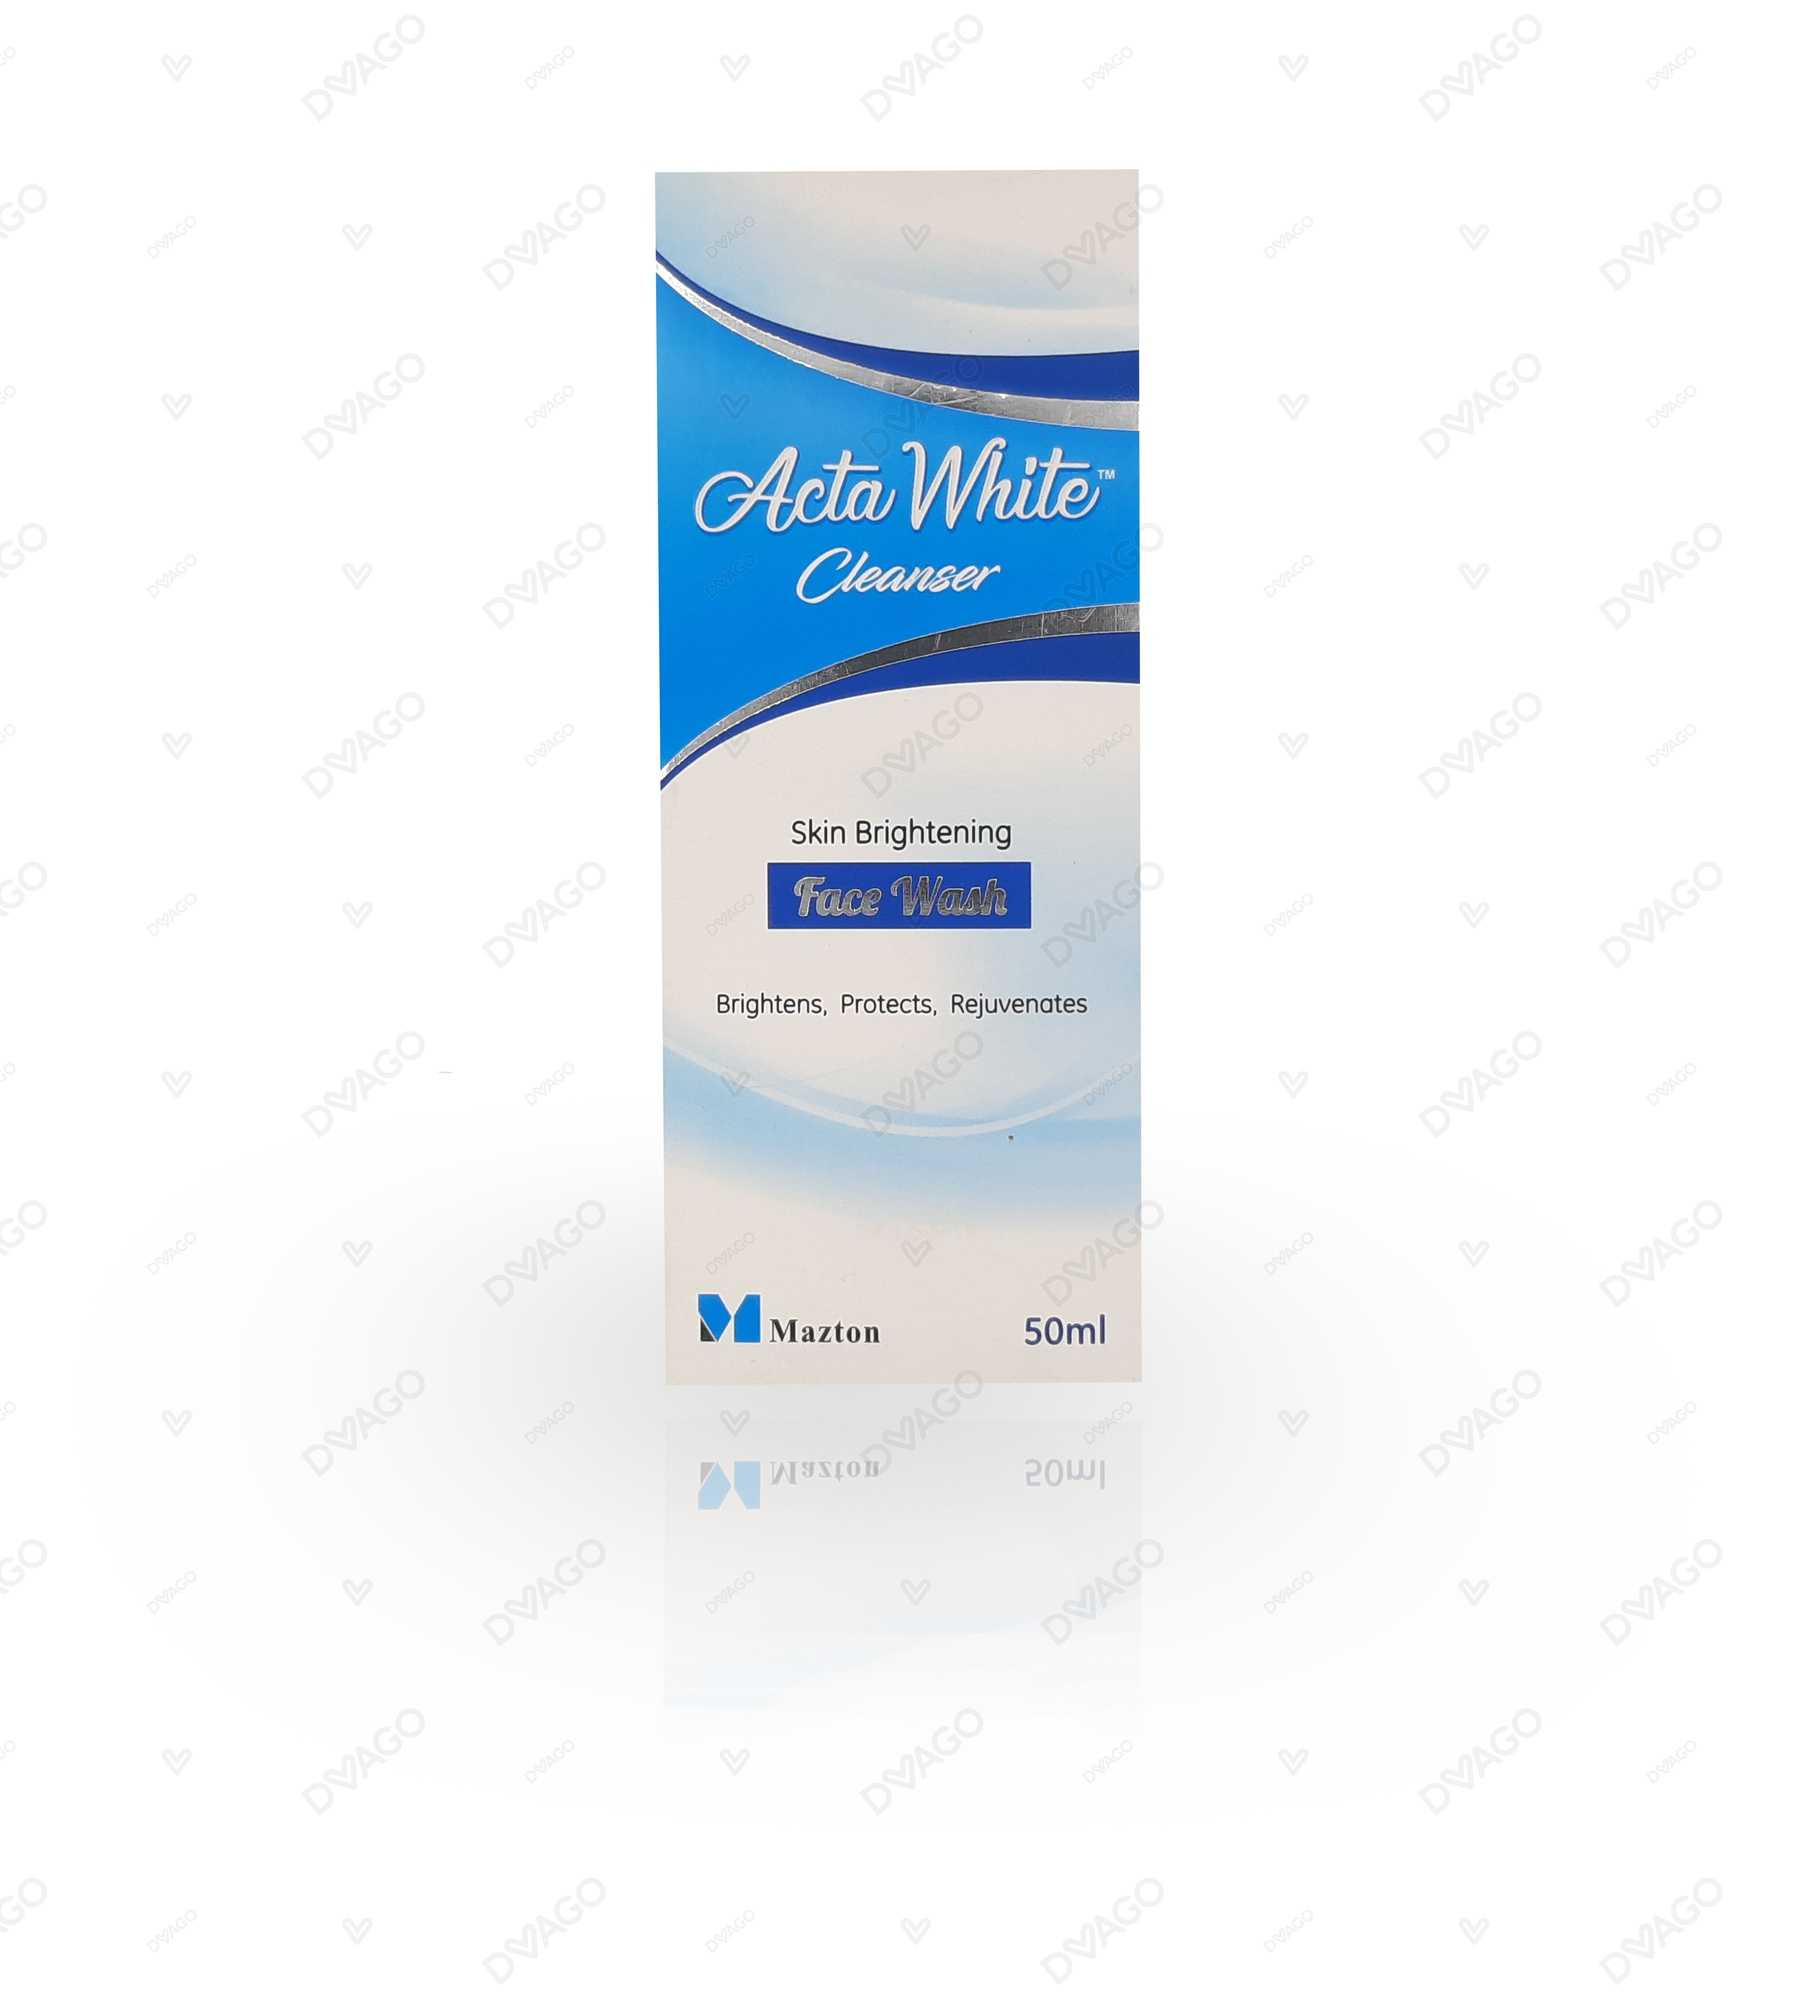 acta white cleanser skin brightening face wash 50ml